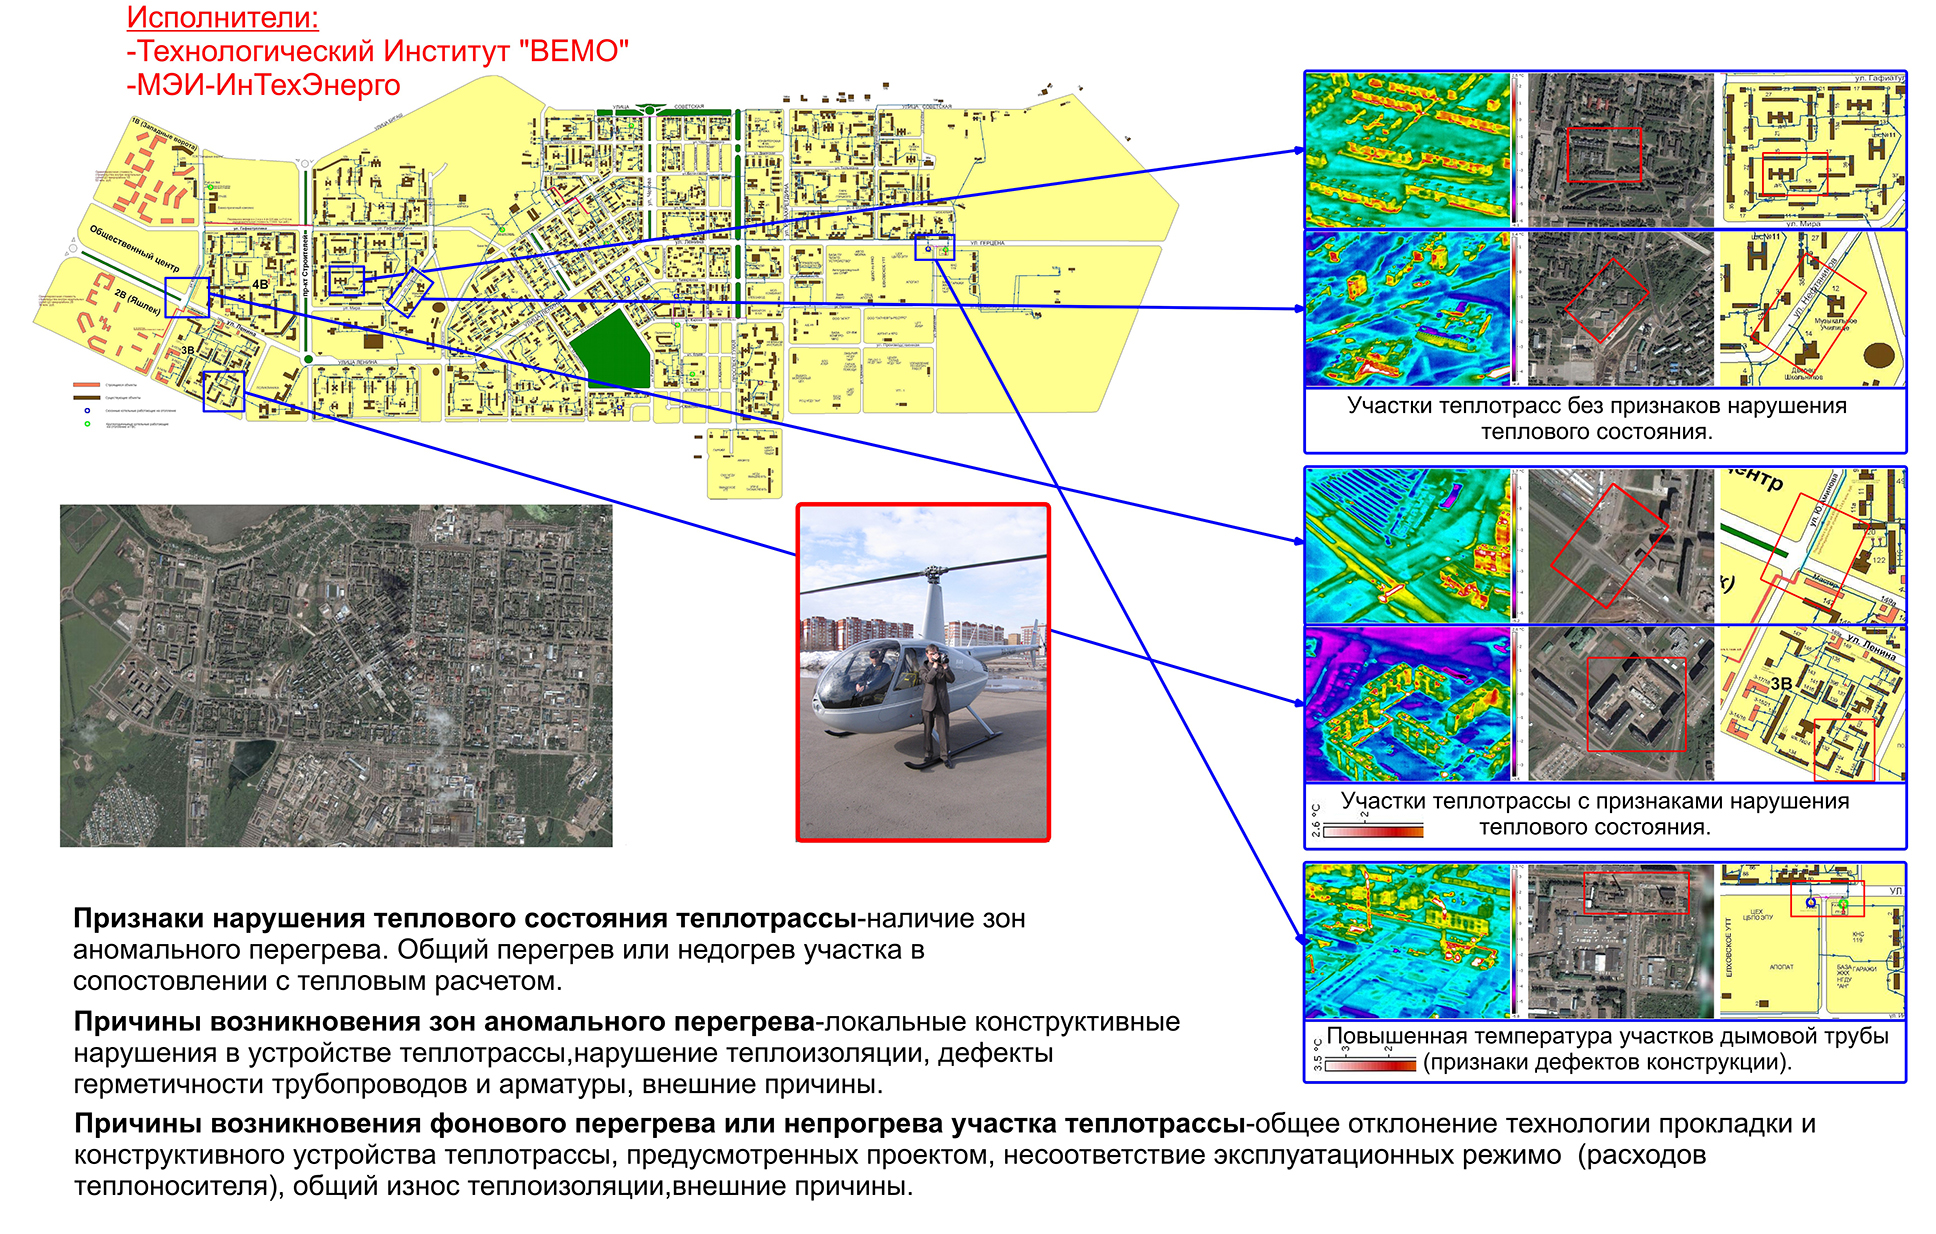 Тепловизионная съёмка аэротермография жилых кварталов и теплотрасс с вертолёта